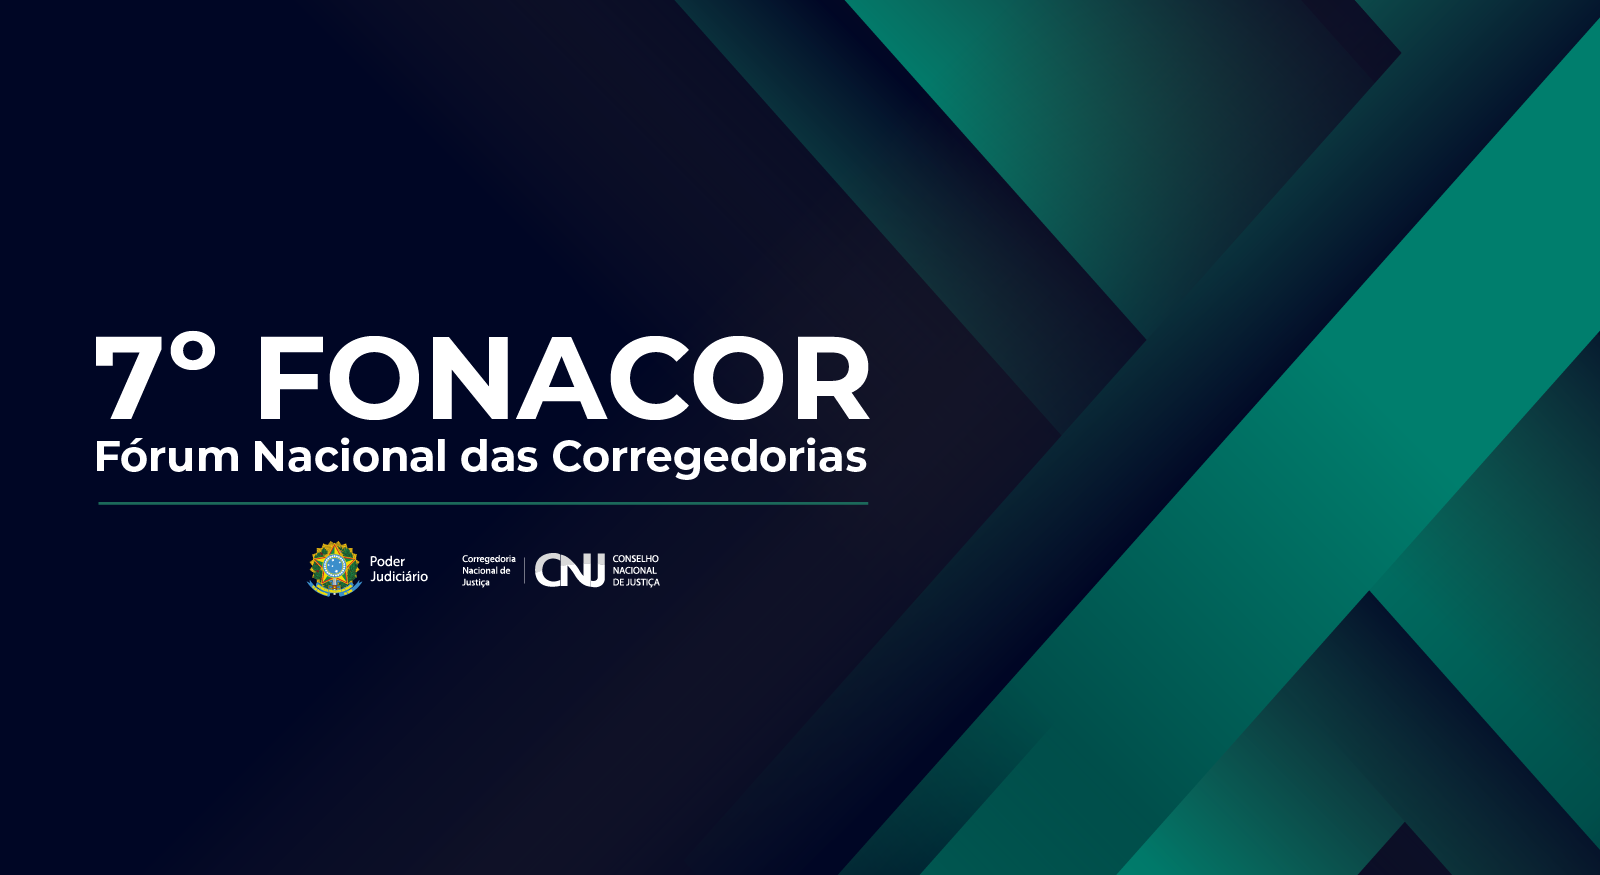 identidade visual do evento 7º Fórum Nacional das Corregedorias - FONACOR no formato 768x420 pixels